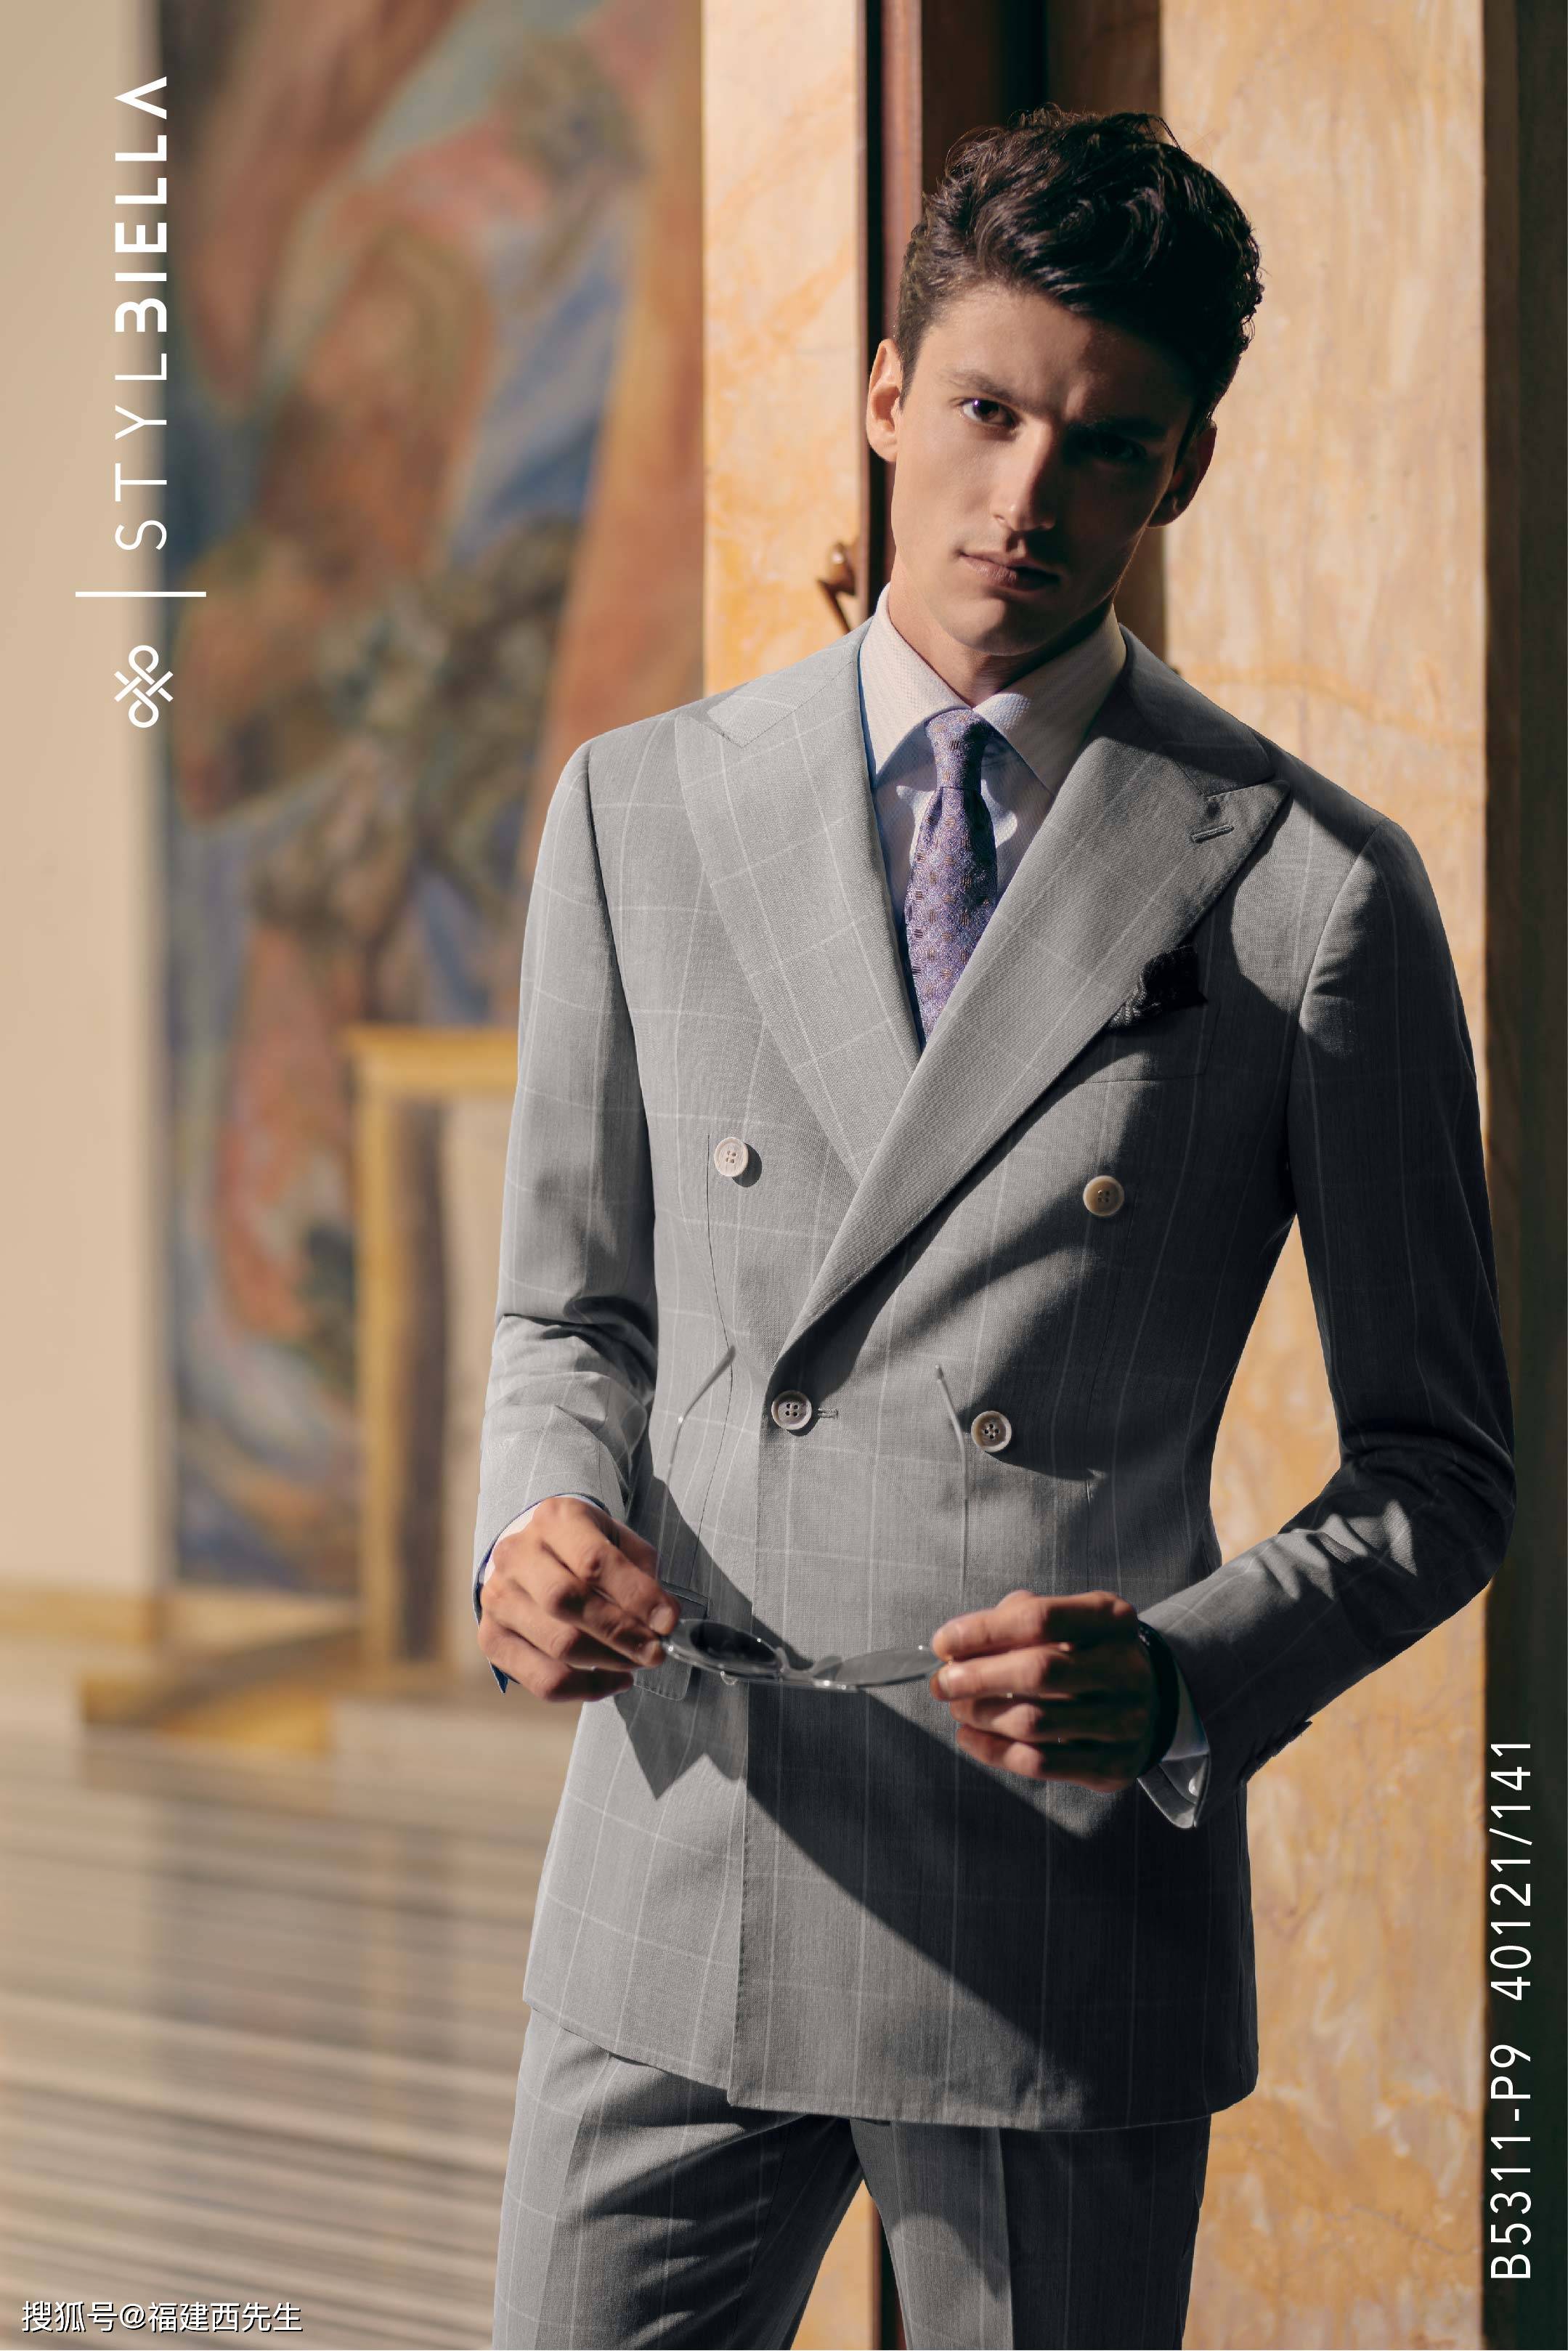 福州宝龙mrc西先生西装定制——灰色西服,穿出都市男性的自我风格